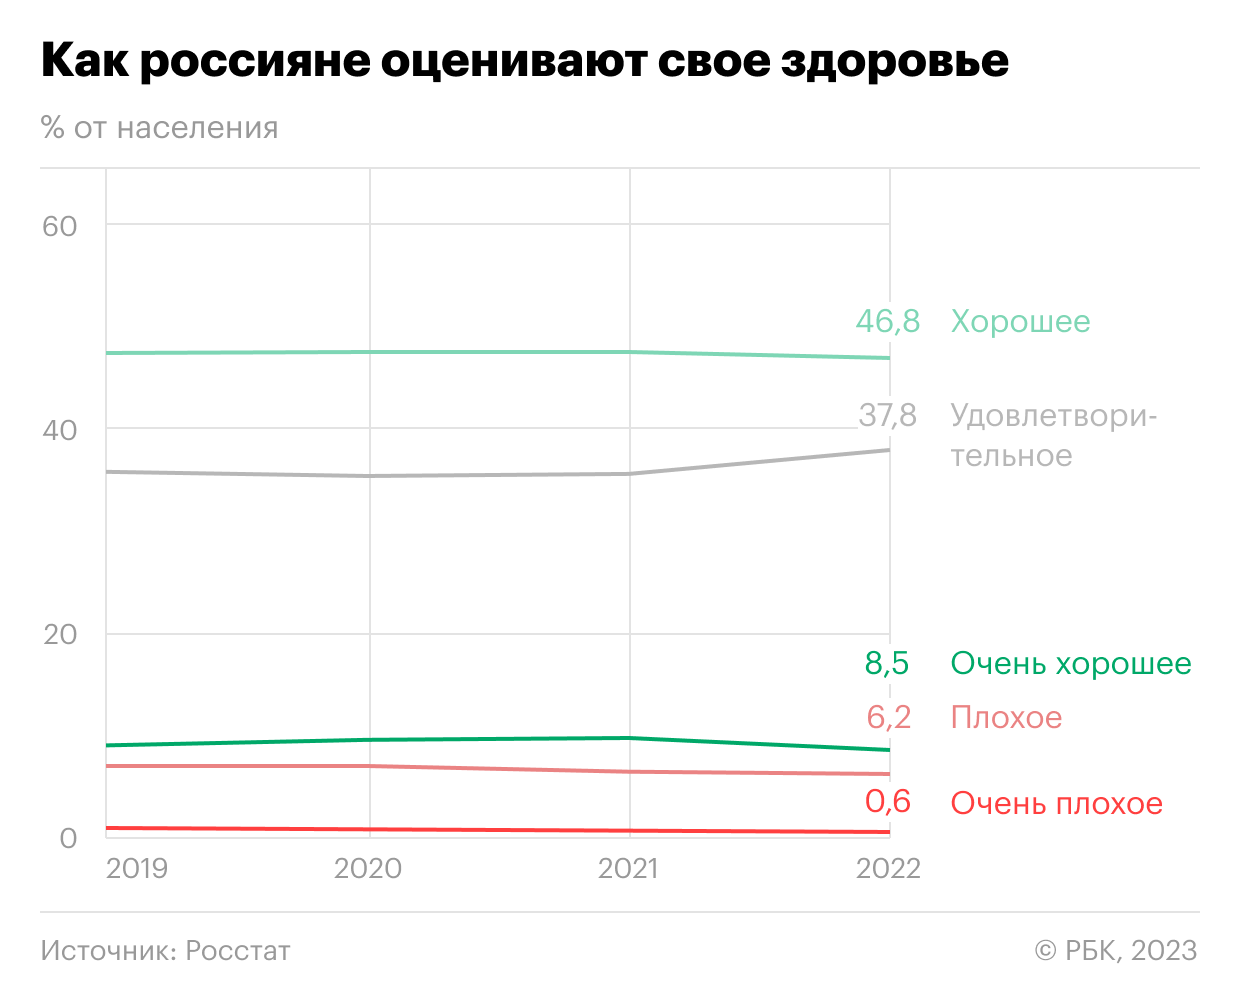 Как мужчины в России стали чаще заниматься «анти-ЗОЖ». Инфографика